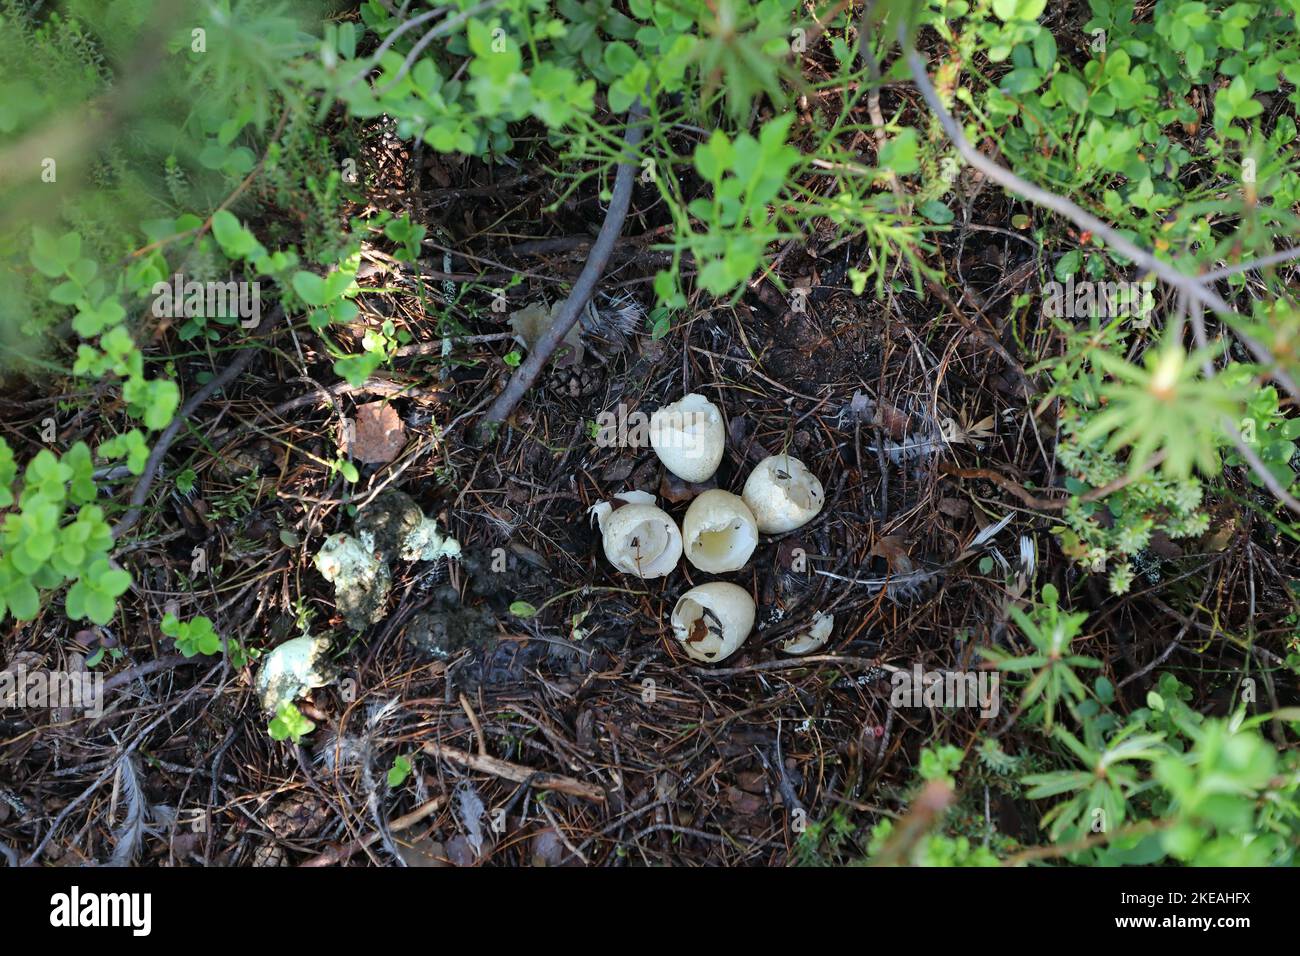 le capercaillie occidental, tétrao urogallus, nichent avec des coquilles d'aubergines après l'éclosion des poussins, Finlande, Kajaani, Kainuu Banque D'Images